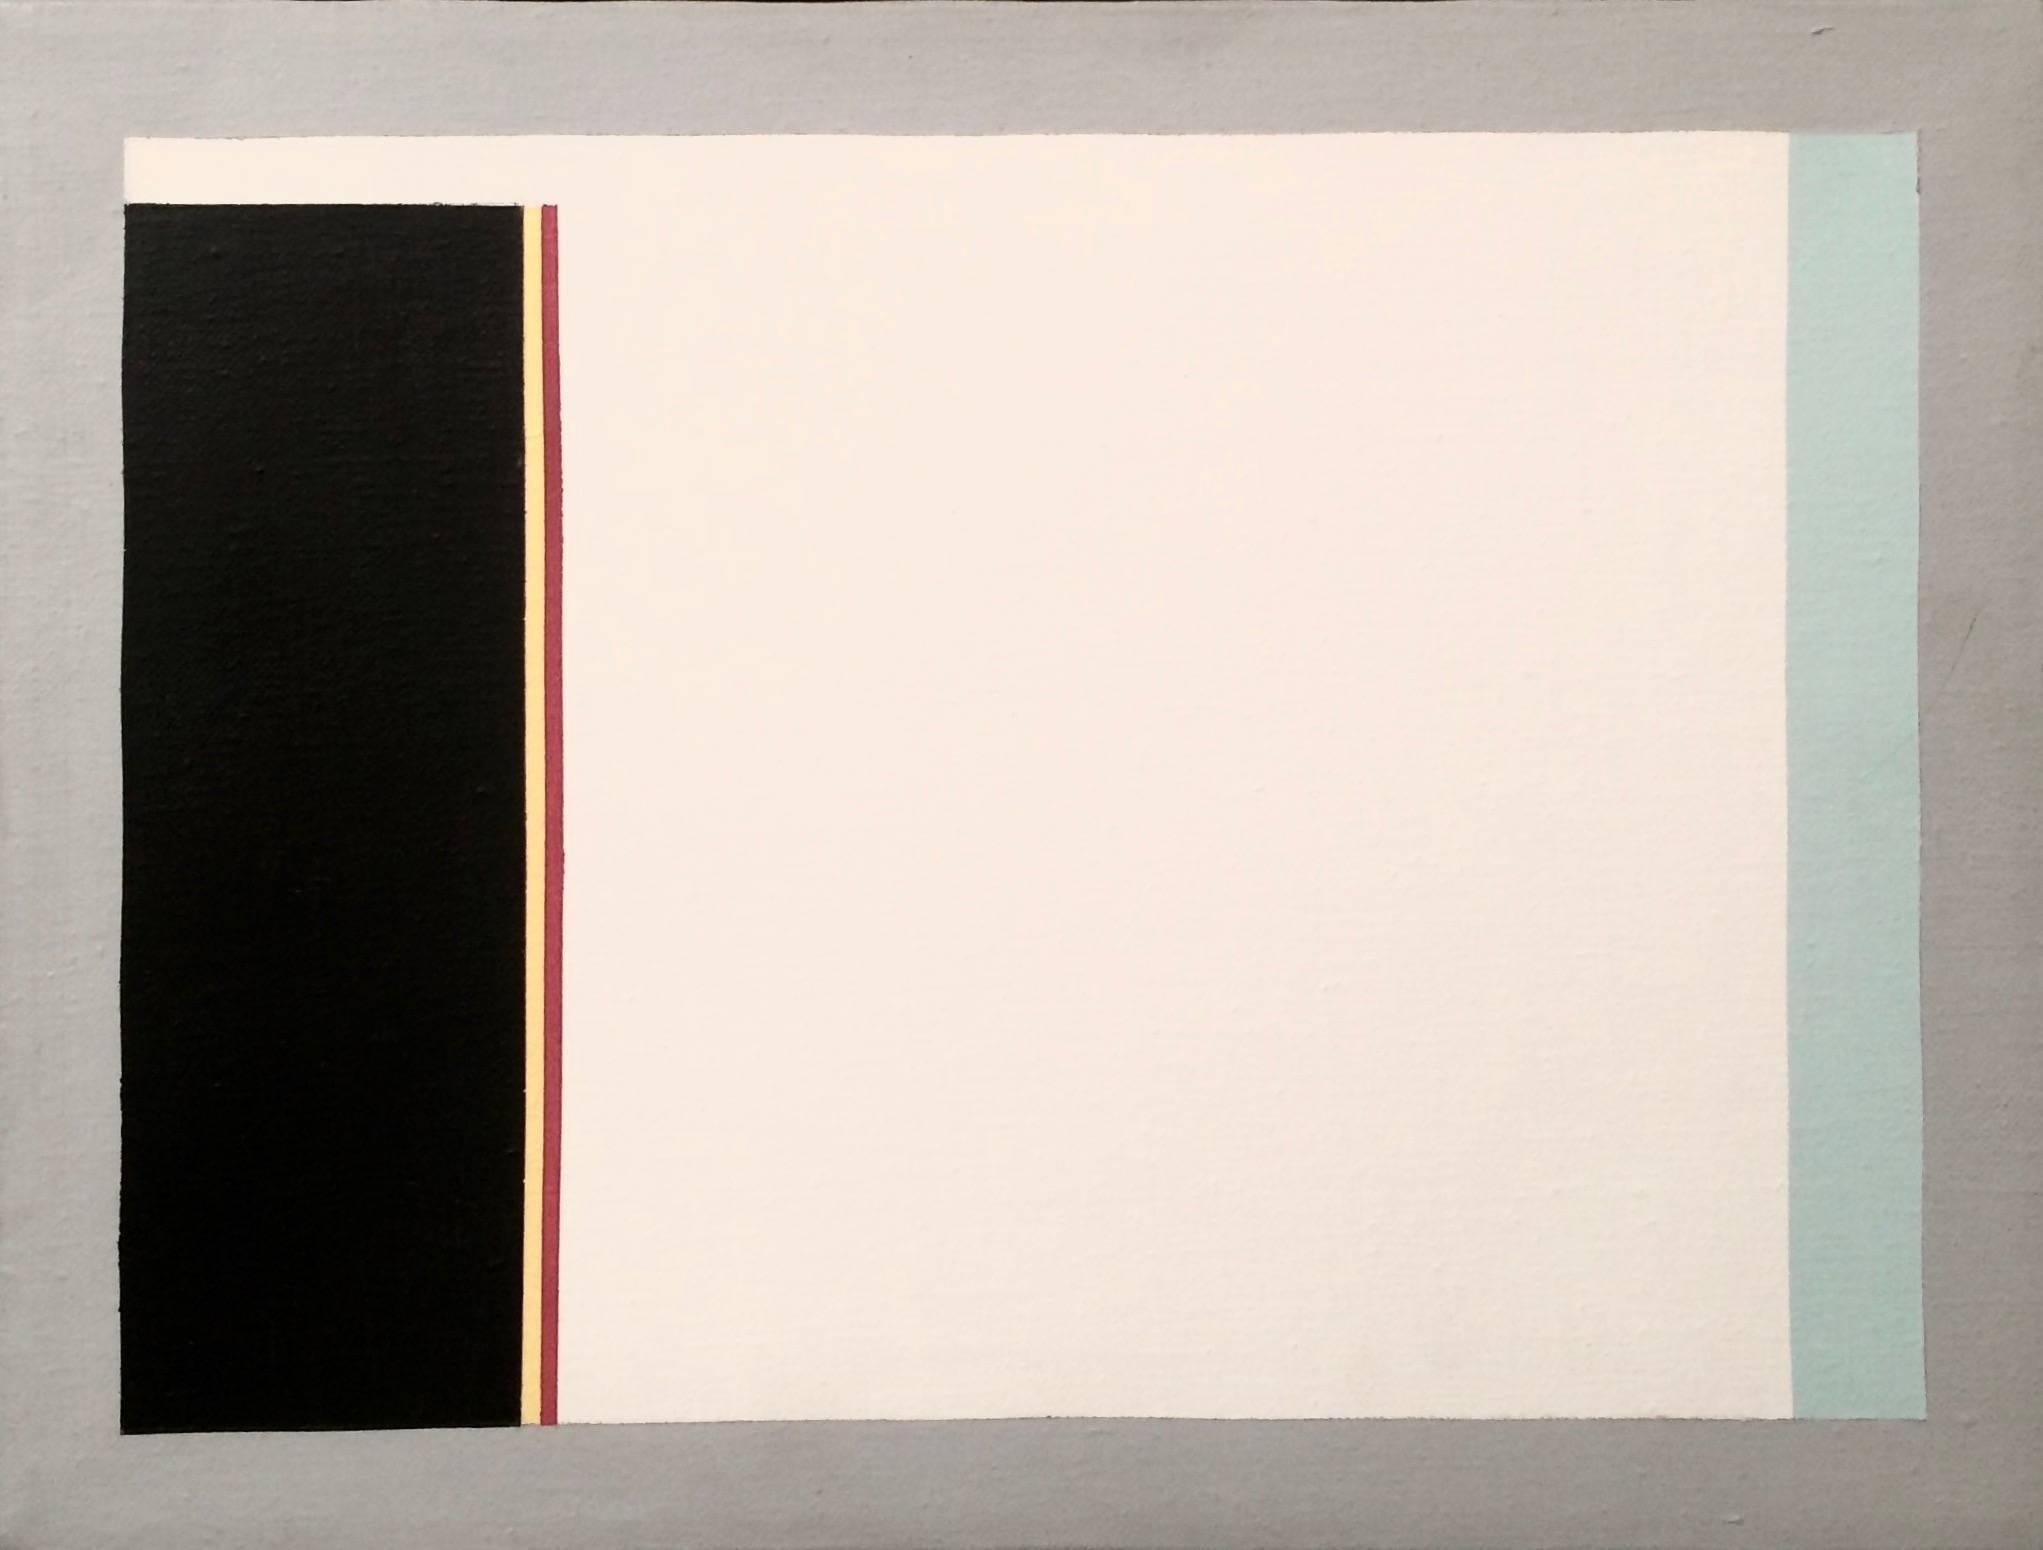 Abstract Painting Gene Davis - Sans titre (1983) - Composition en champs de couleurs - Bleu, Rouge, Noir, Blanc et Jaune